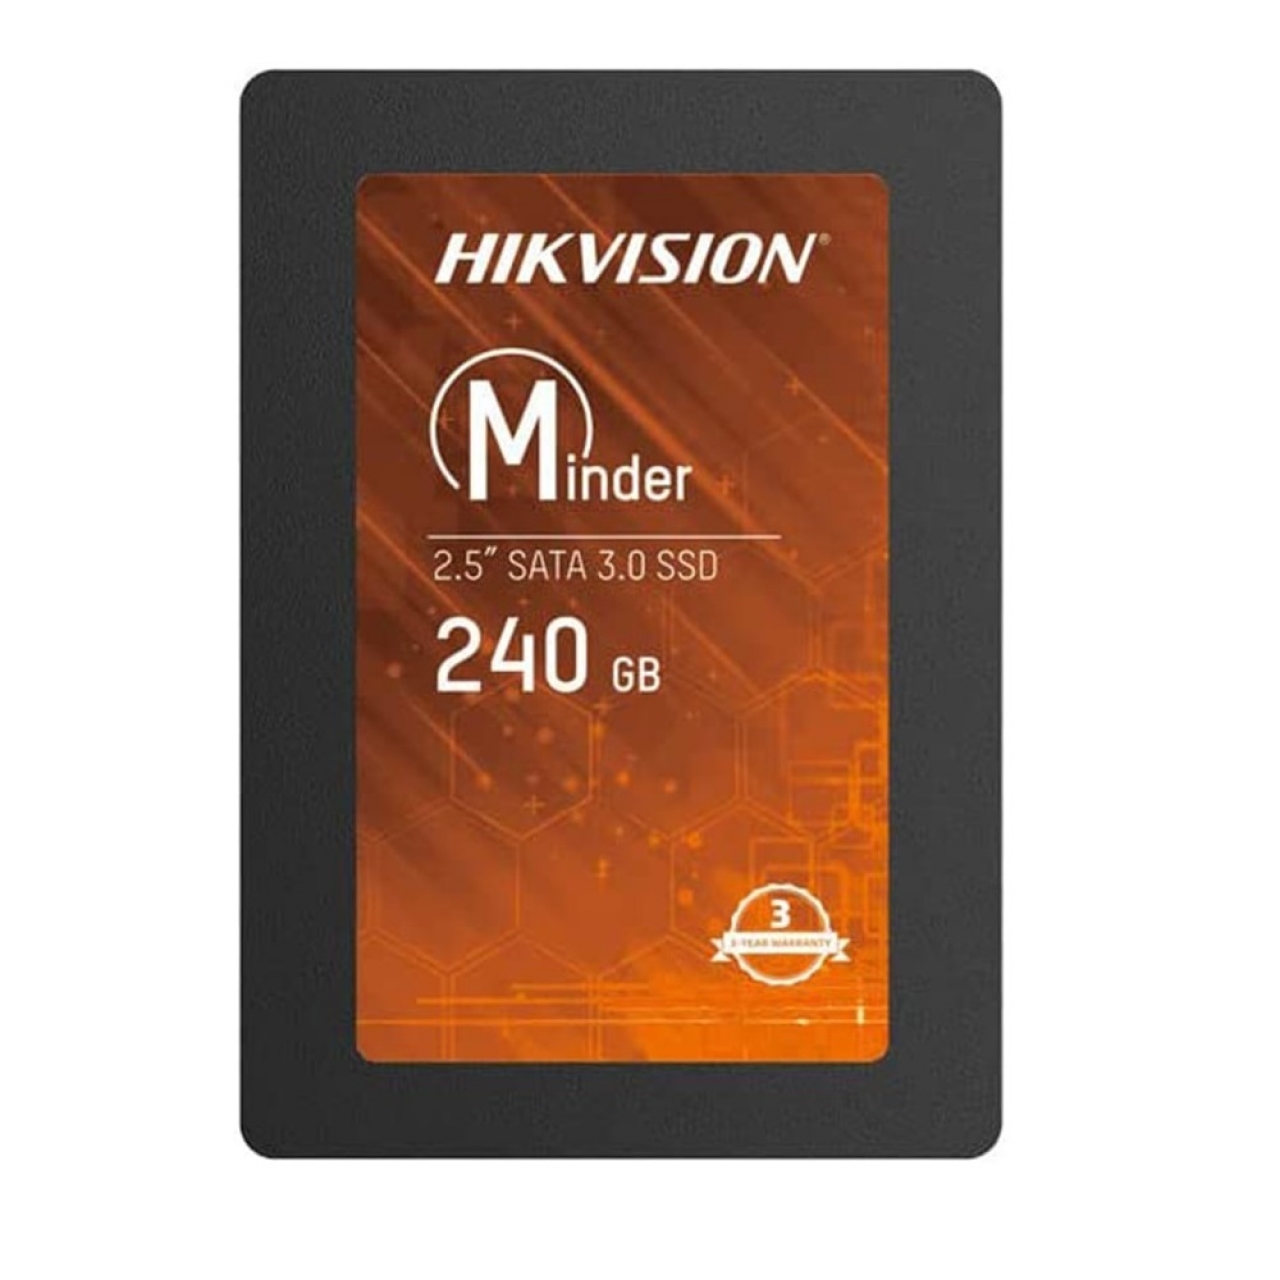 HIKVISION 240GB HS-SSD-MINDER 550- 450MB/s SSD SATA-3 Disk